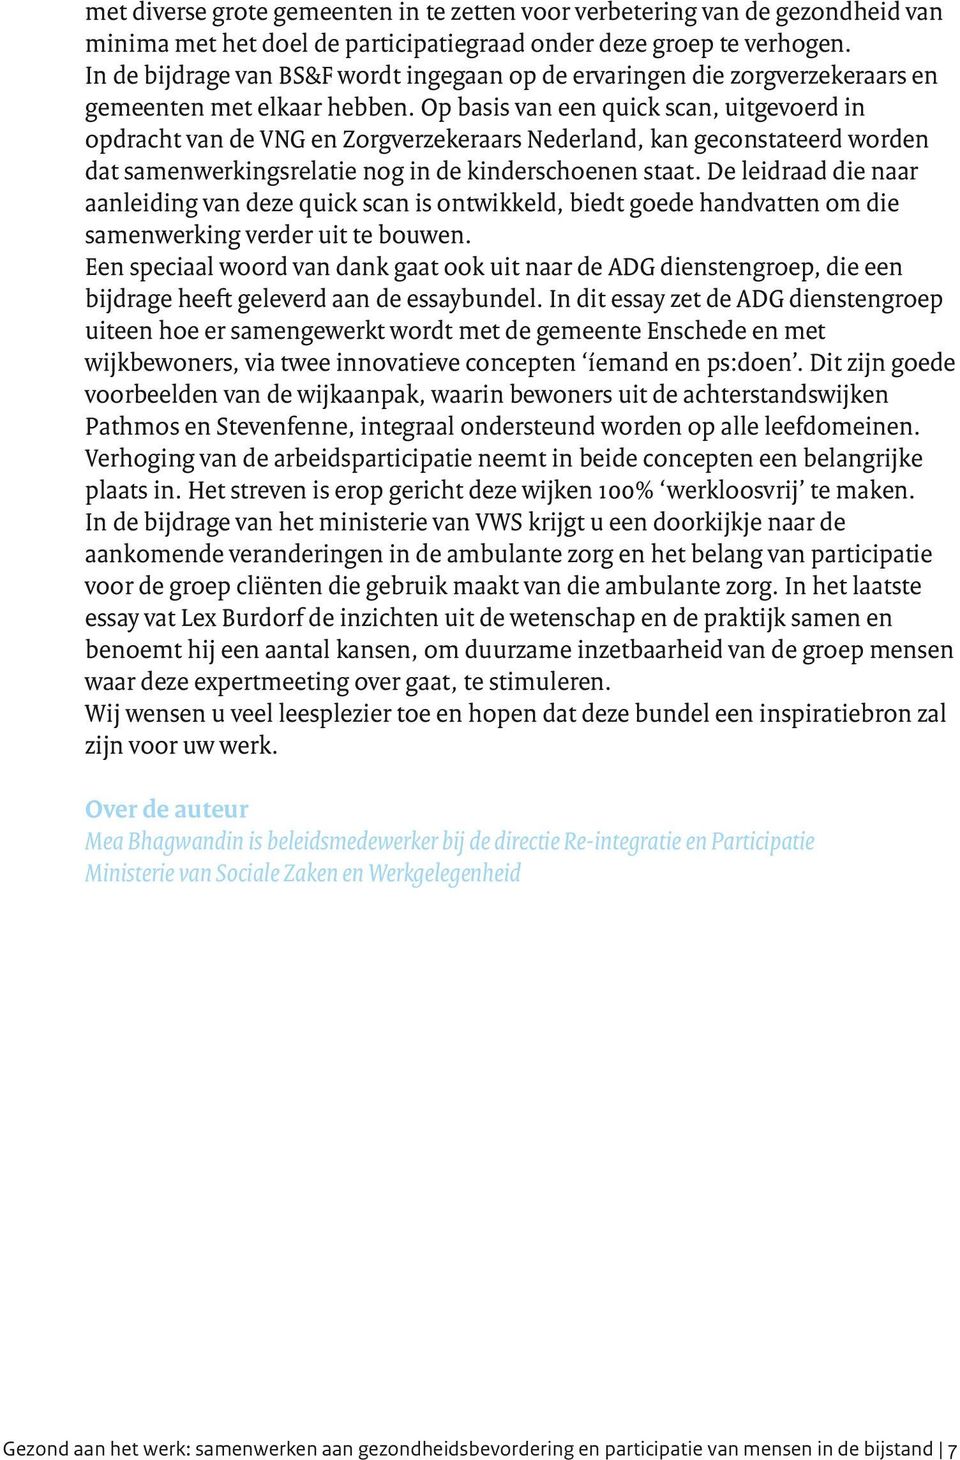 Op basis van een quick scan, uitgevoerd in opdracht van de VNG en Zorgverzekeraars Nederland, kan geconstateerd worden dat samenwerkingsrelatie nog in de kinderschoenen staat.